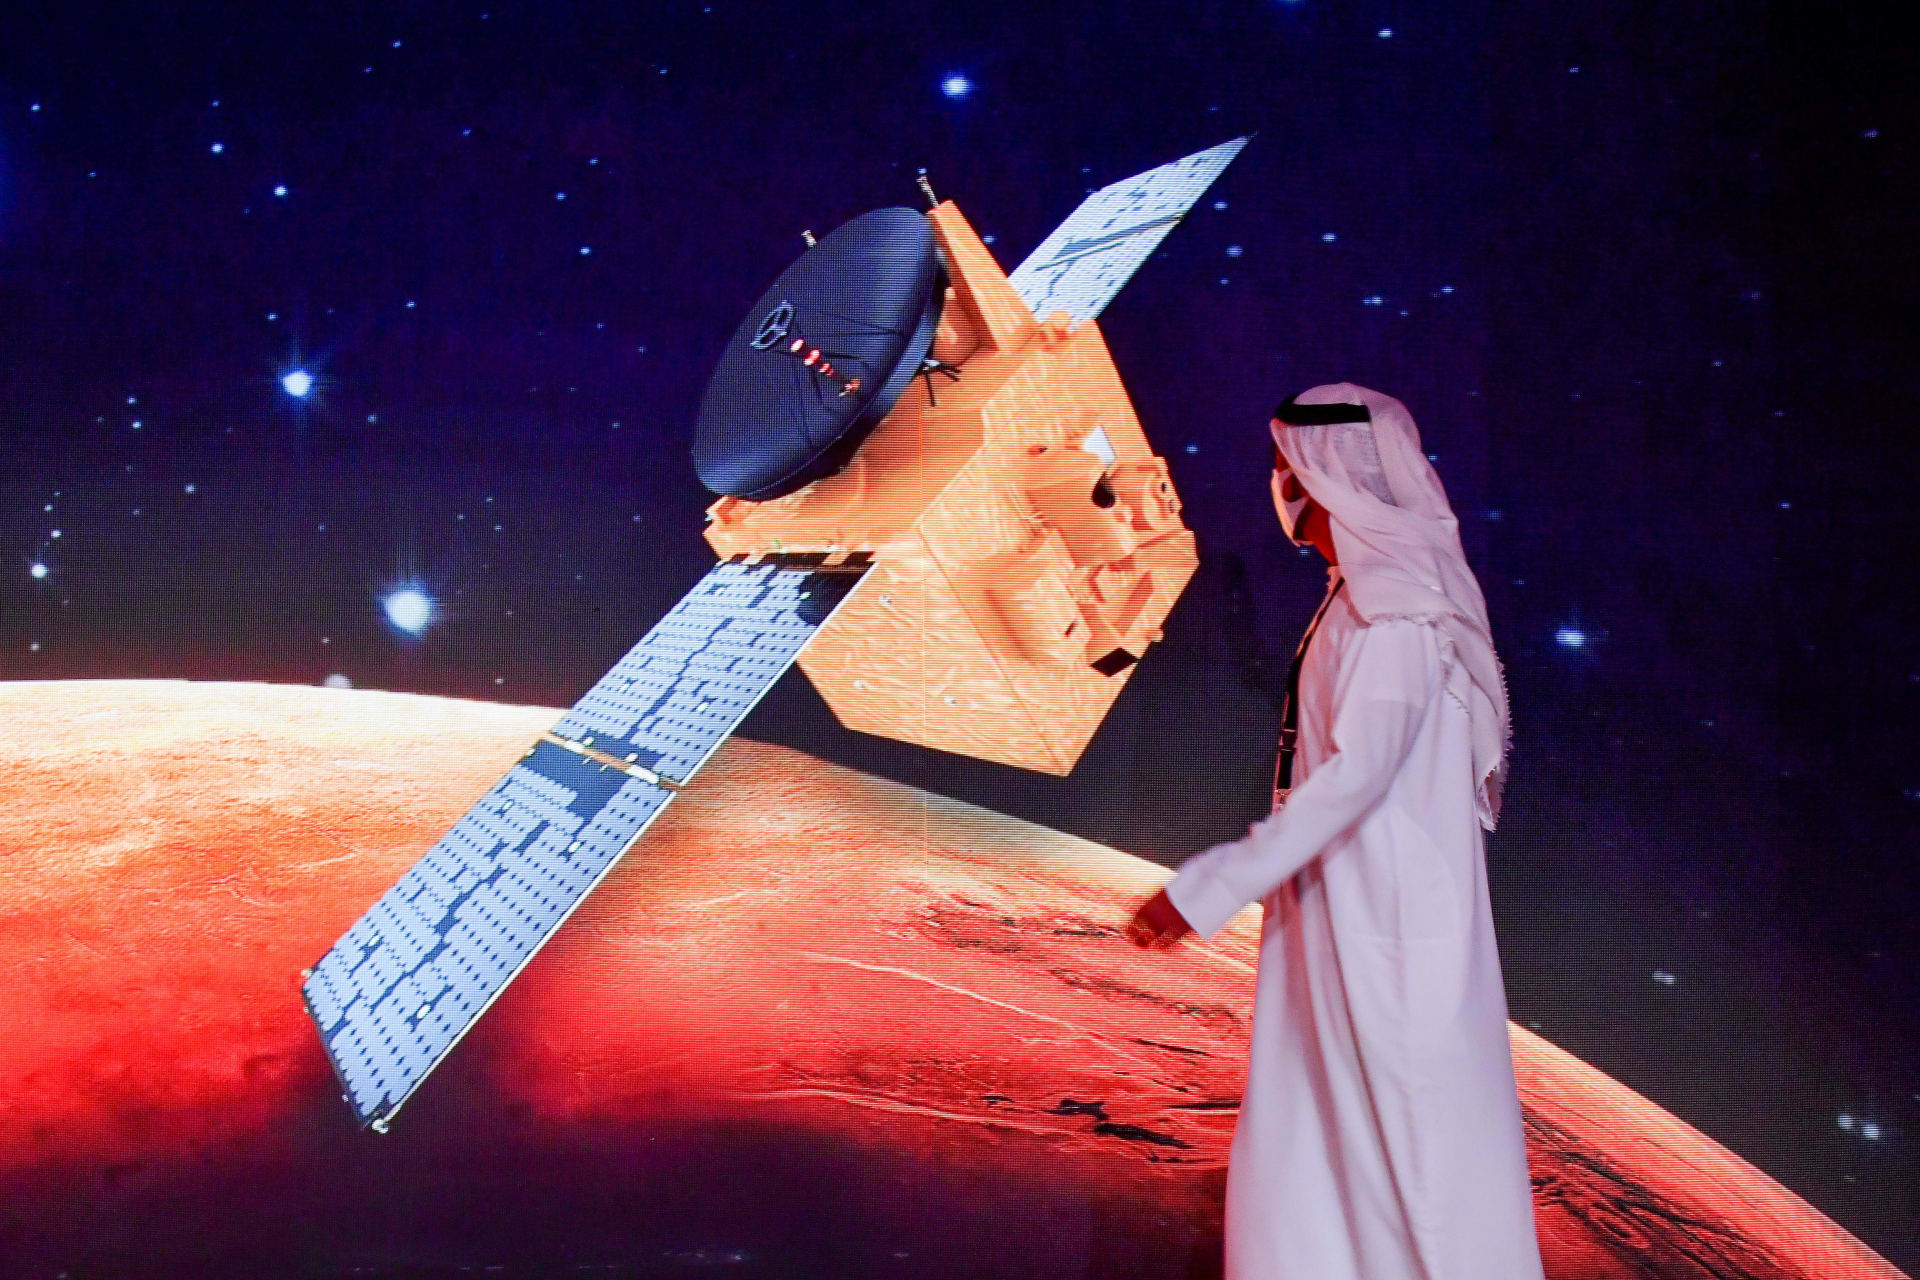 مسبار الأمل إلى المريخ كيف تشاهد لحظة إطلاق أول مهمة عربية إلى الفضاء Cnn Arabic